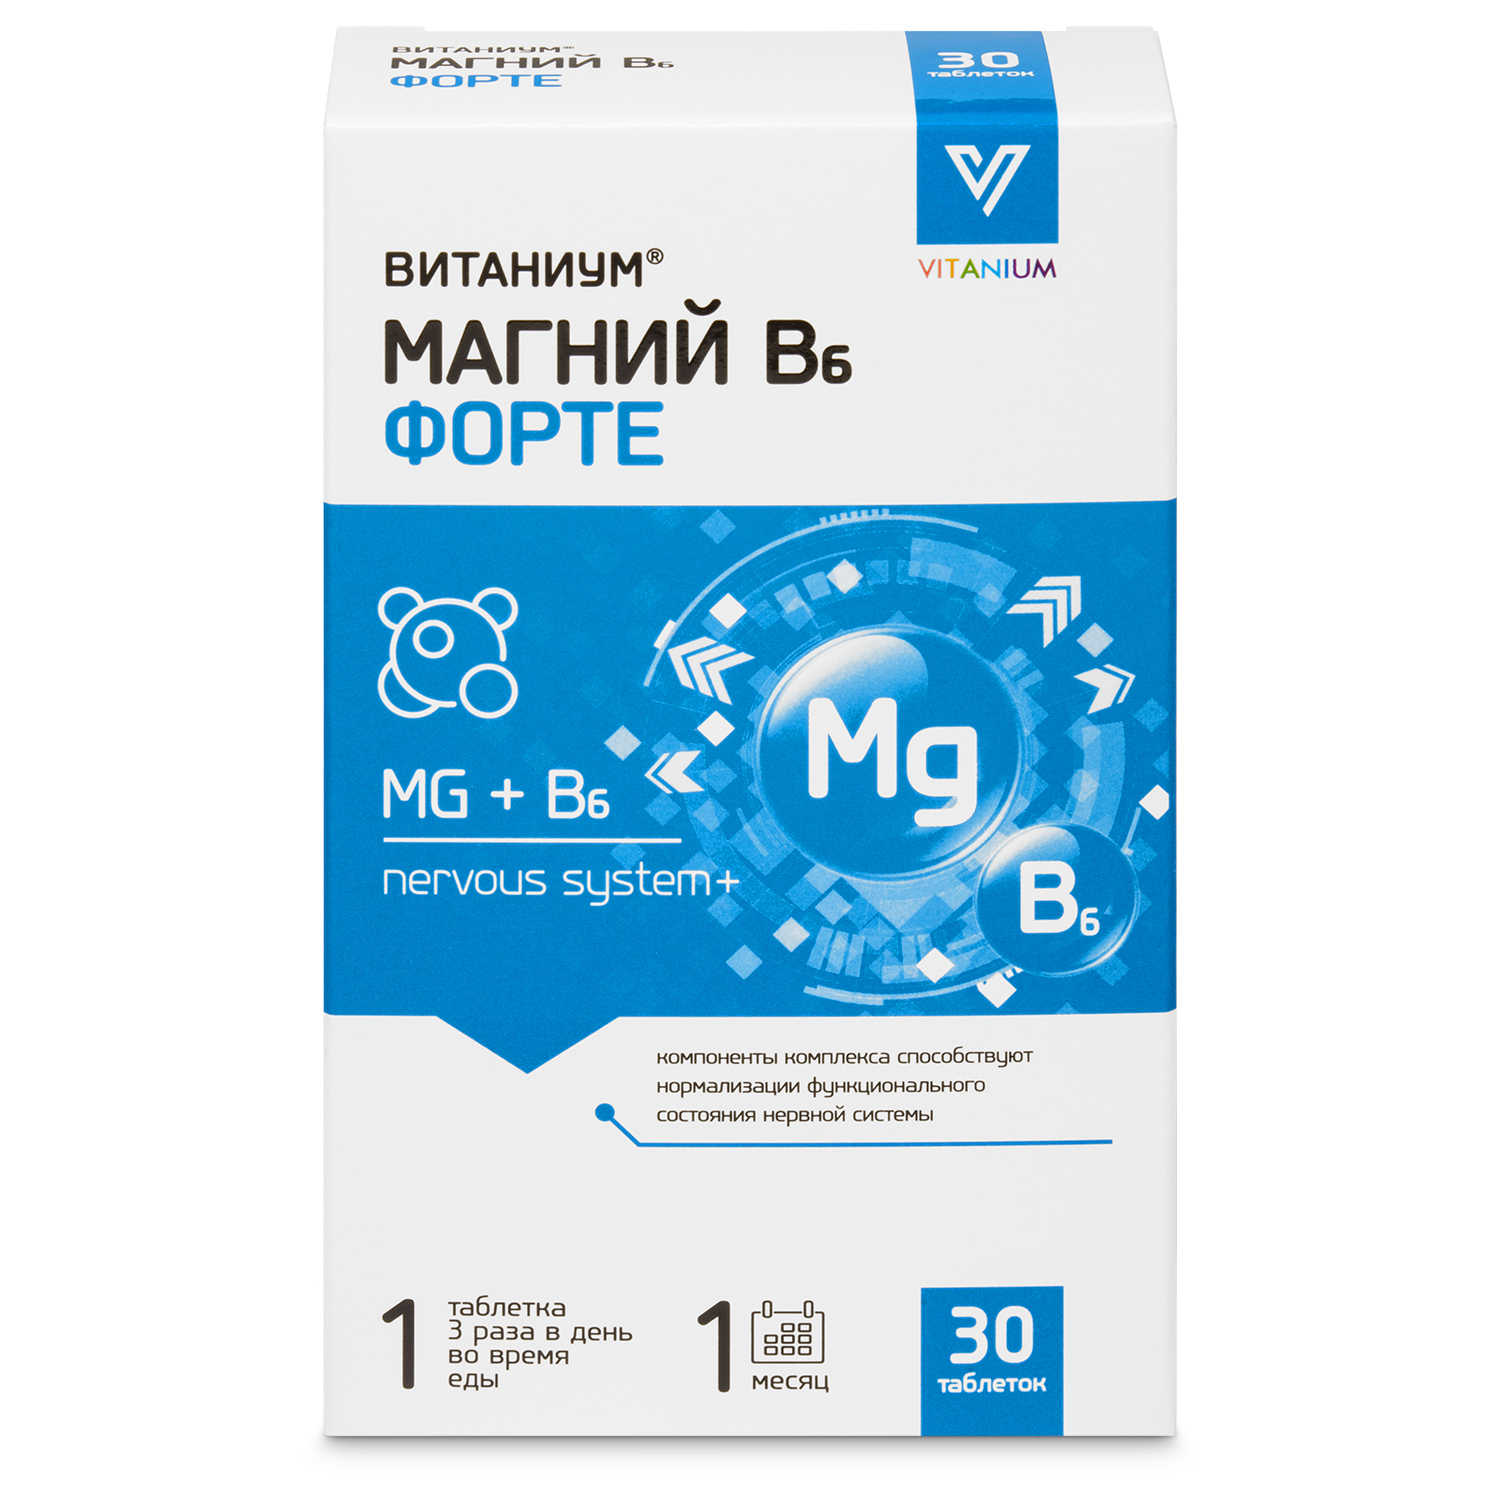 Магний В6 Витаниум Форте таблетки 1170 мг 30 шт.